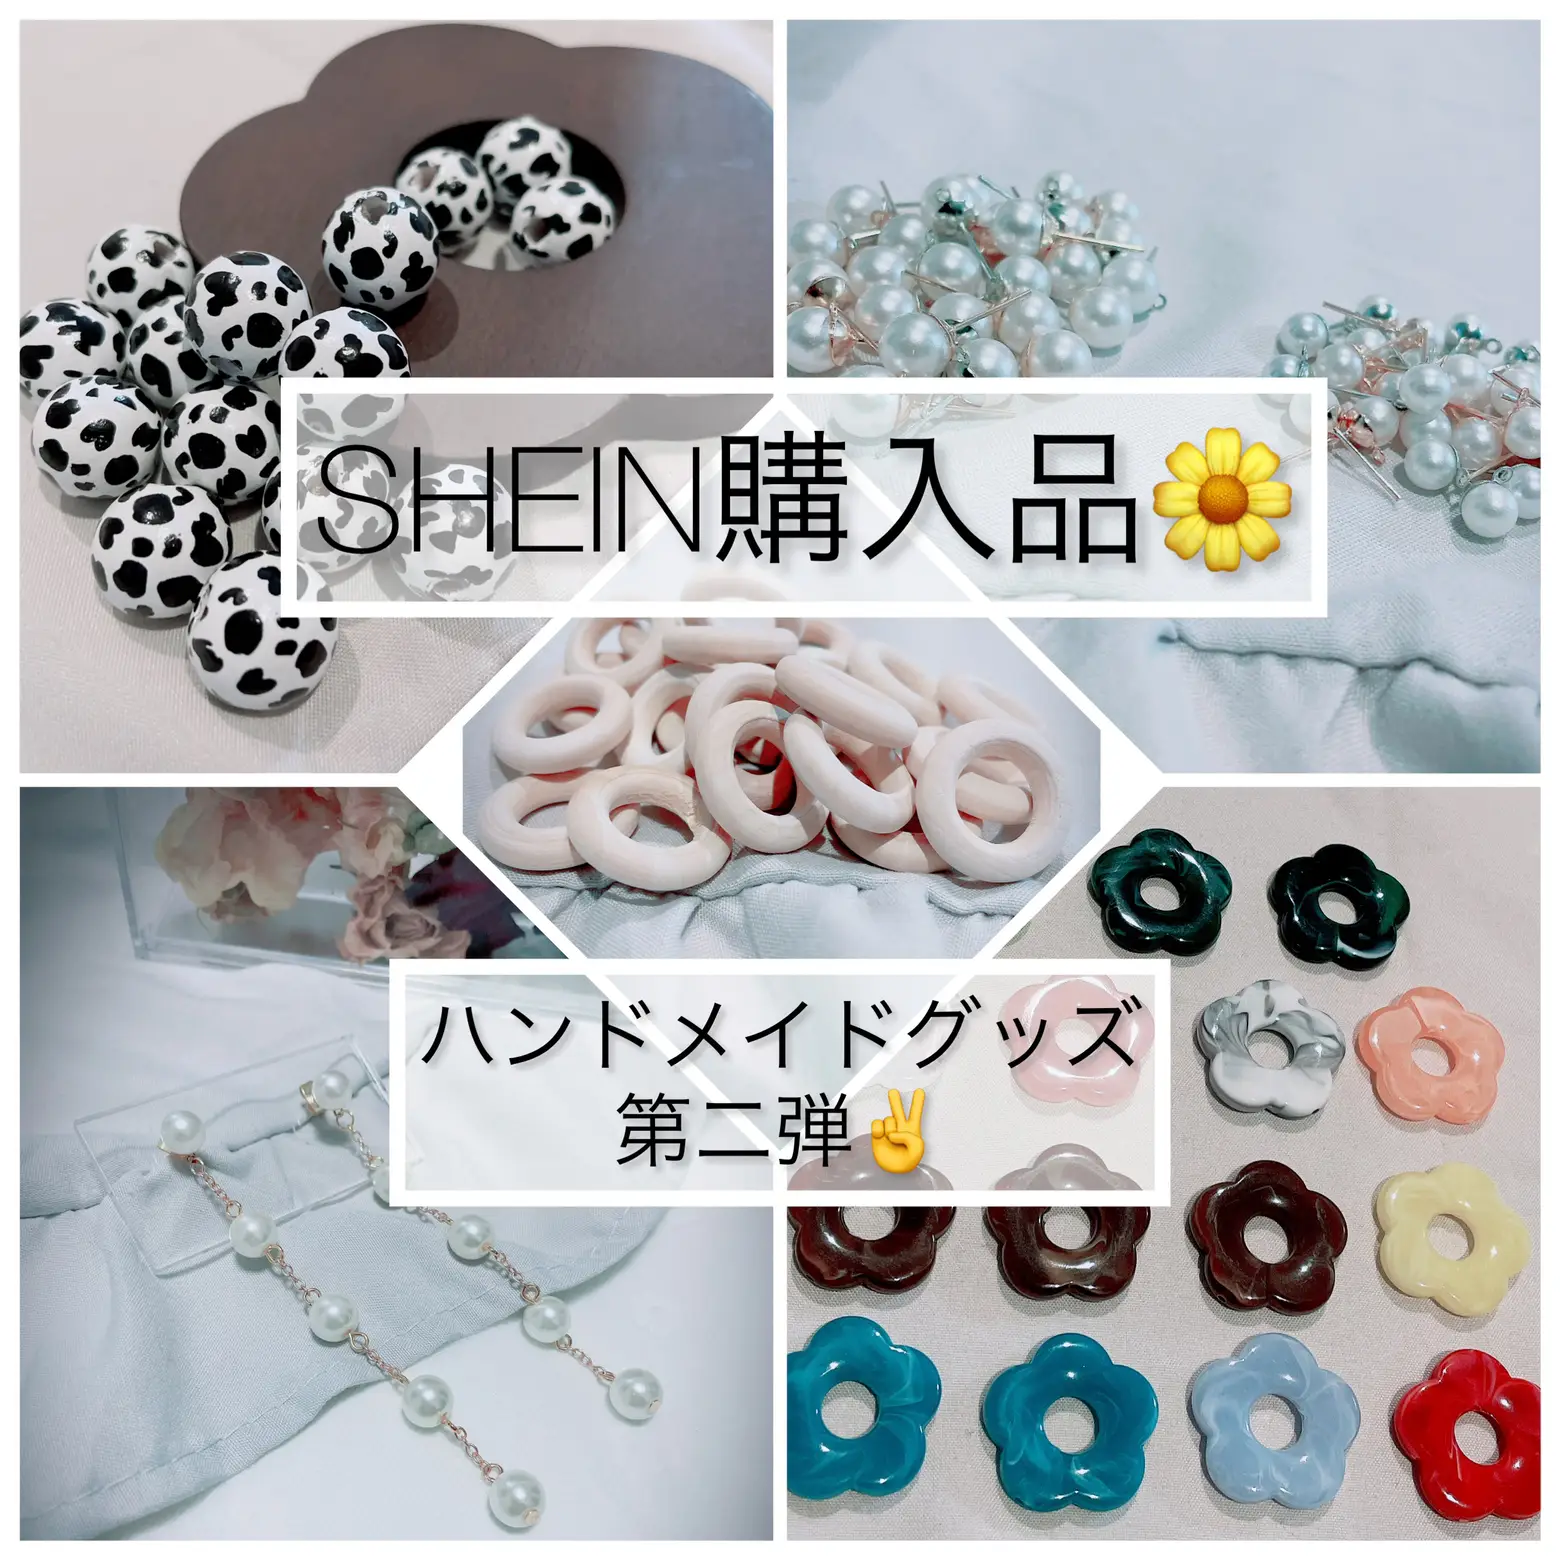 第二回SHEIN購入品🌼ハンドメイドグッズ | hi_madeが投稿したフォト